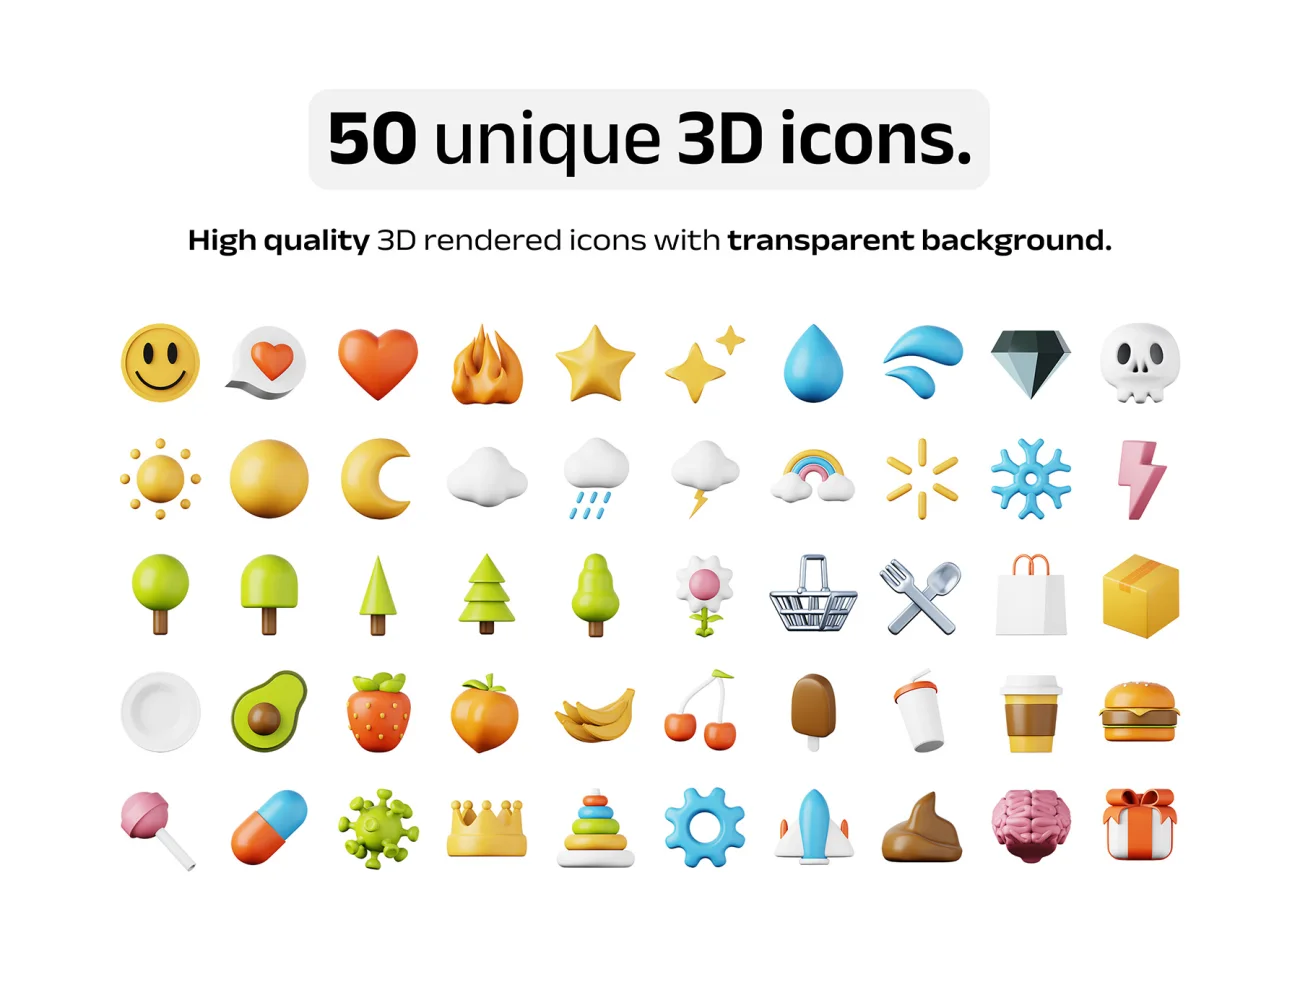 100款高质量表情天气食品3D图标模型素材 50 unique 3D icons .psd .figma .procreate插图5